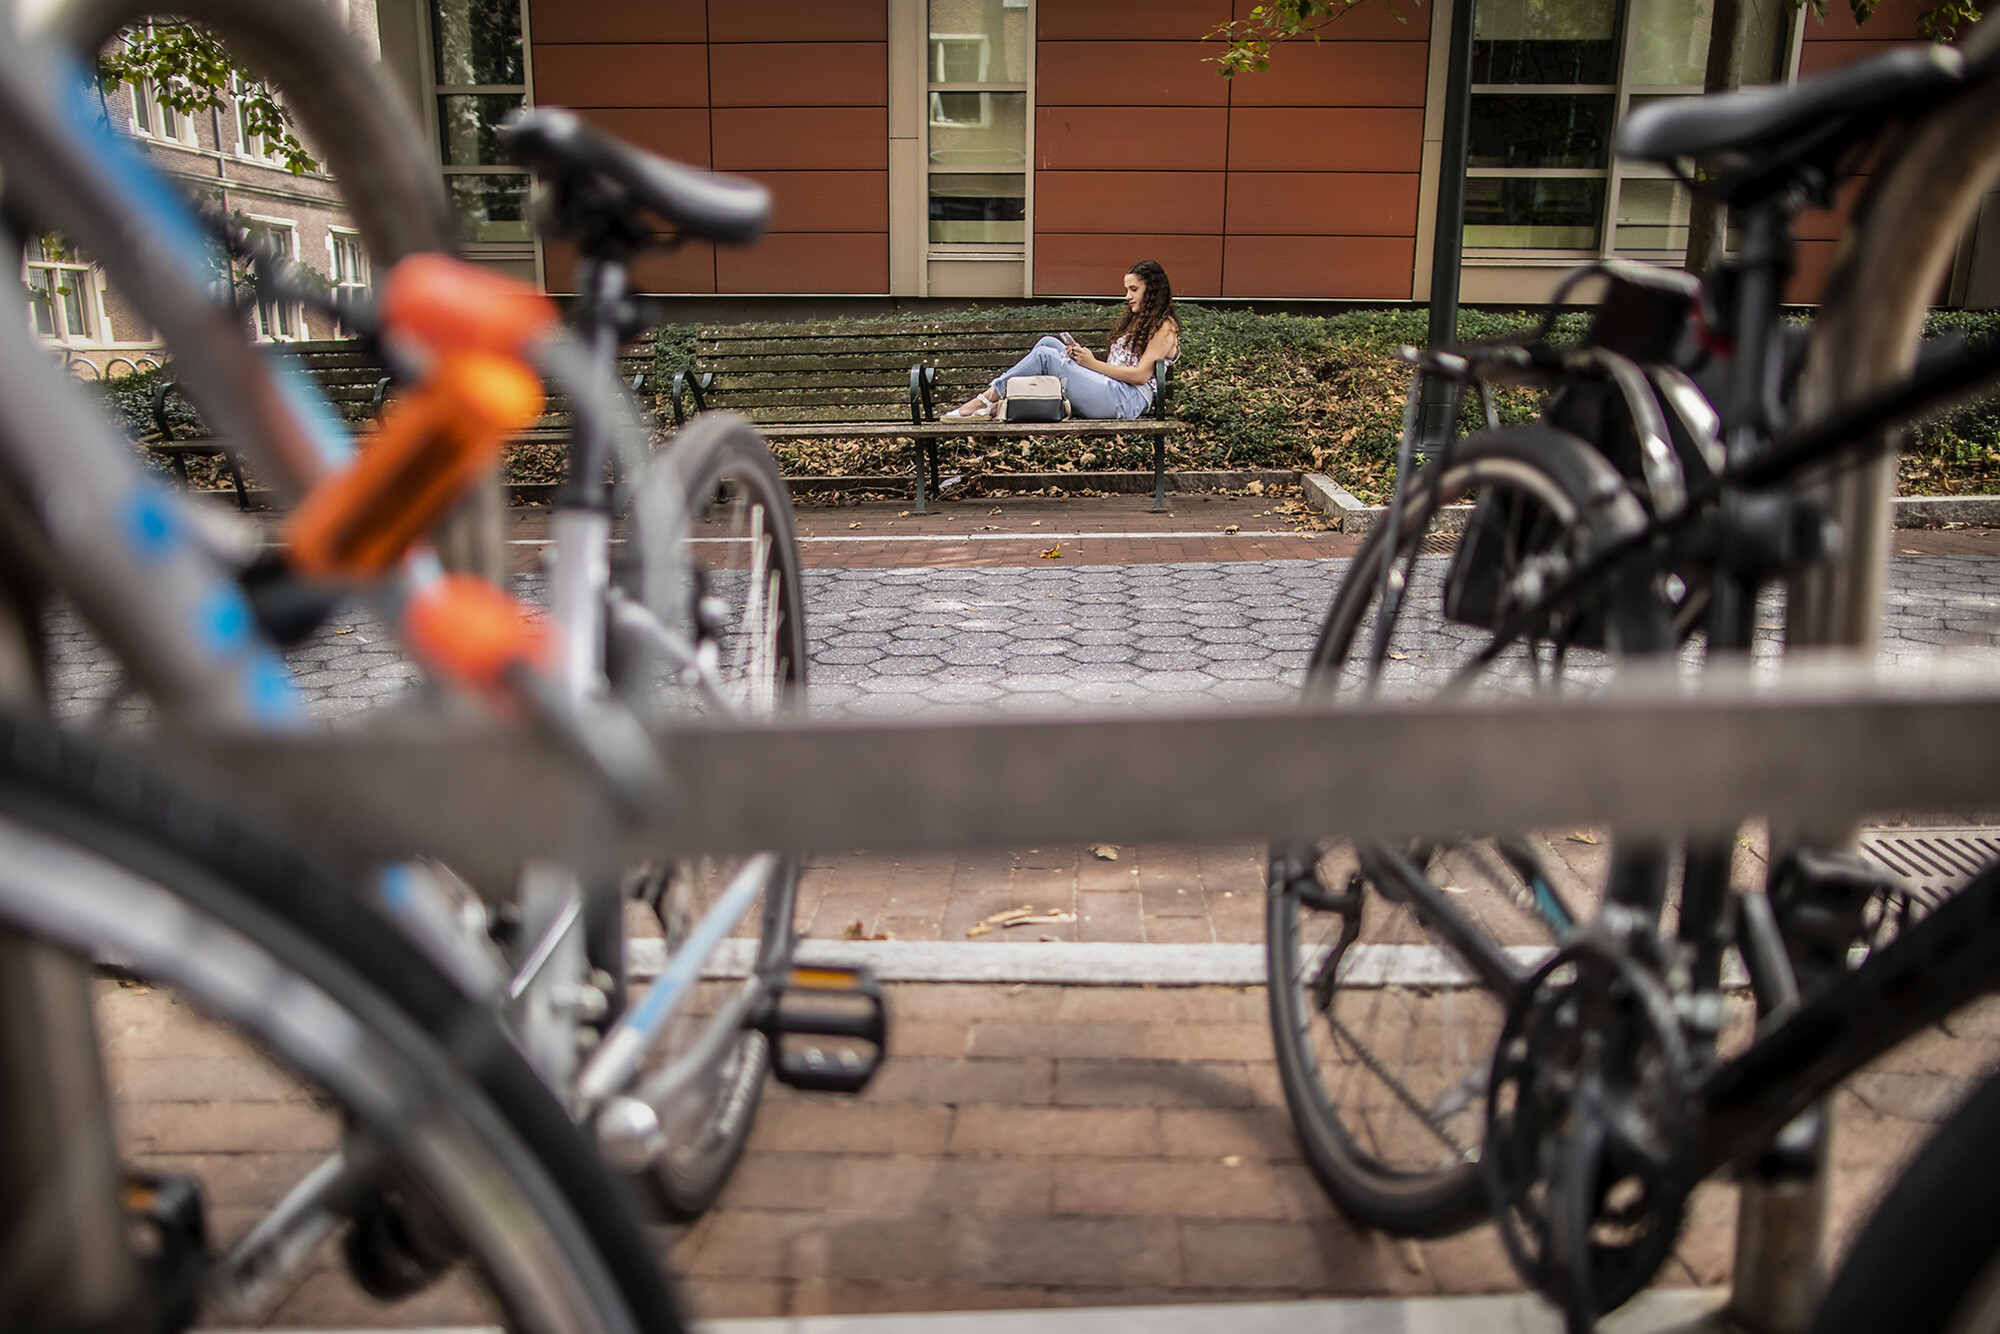 ariana jimenez sitting on a bench with bikes